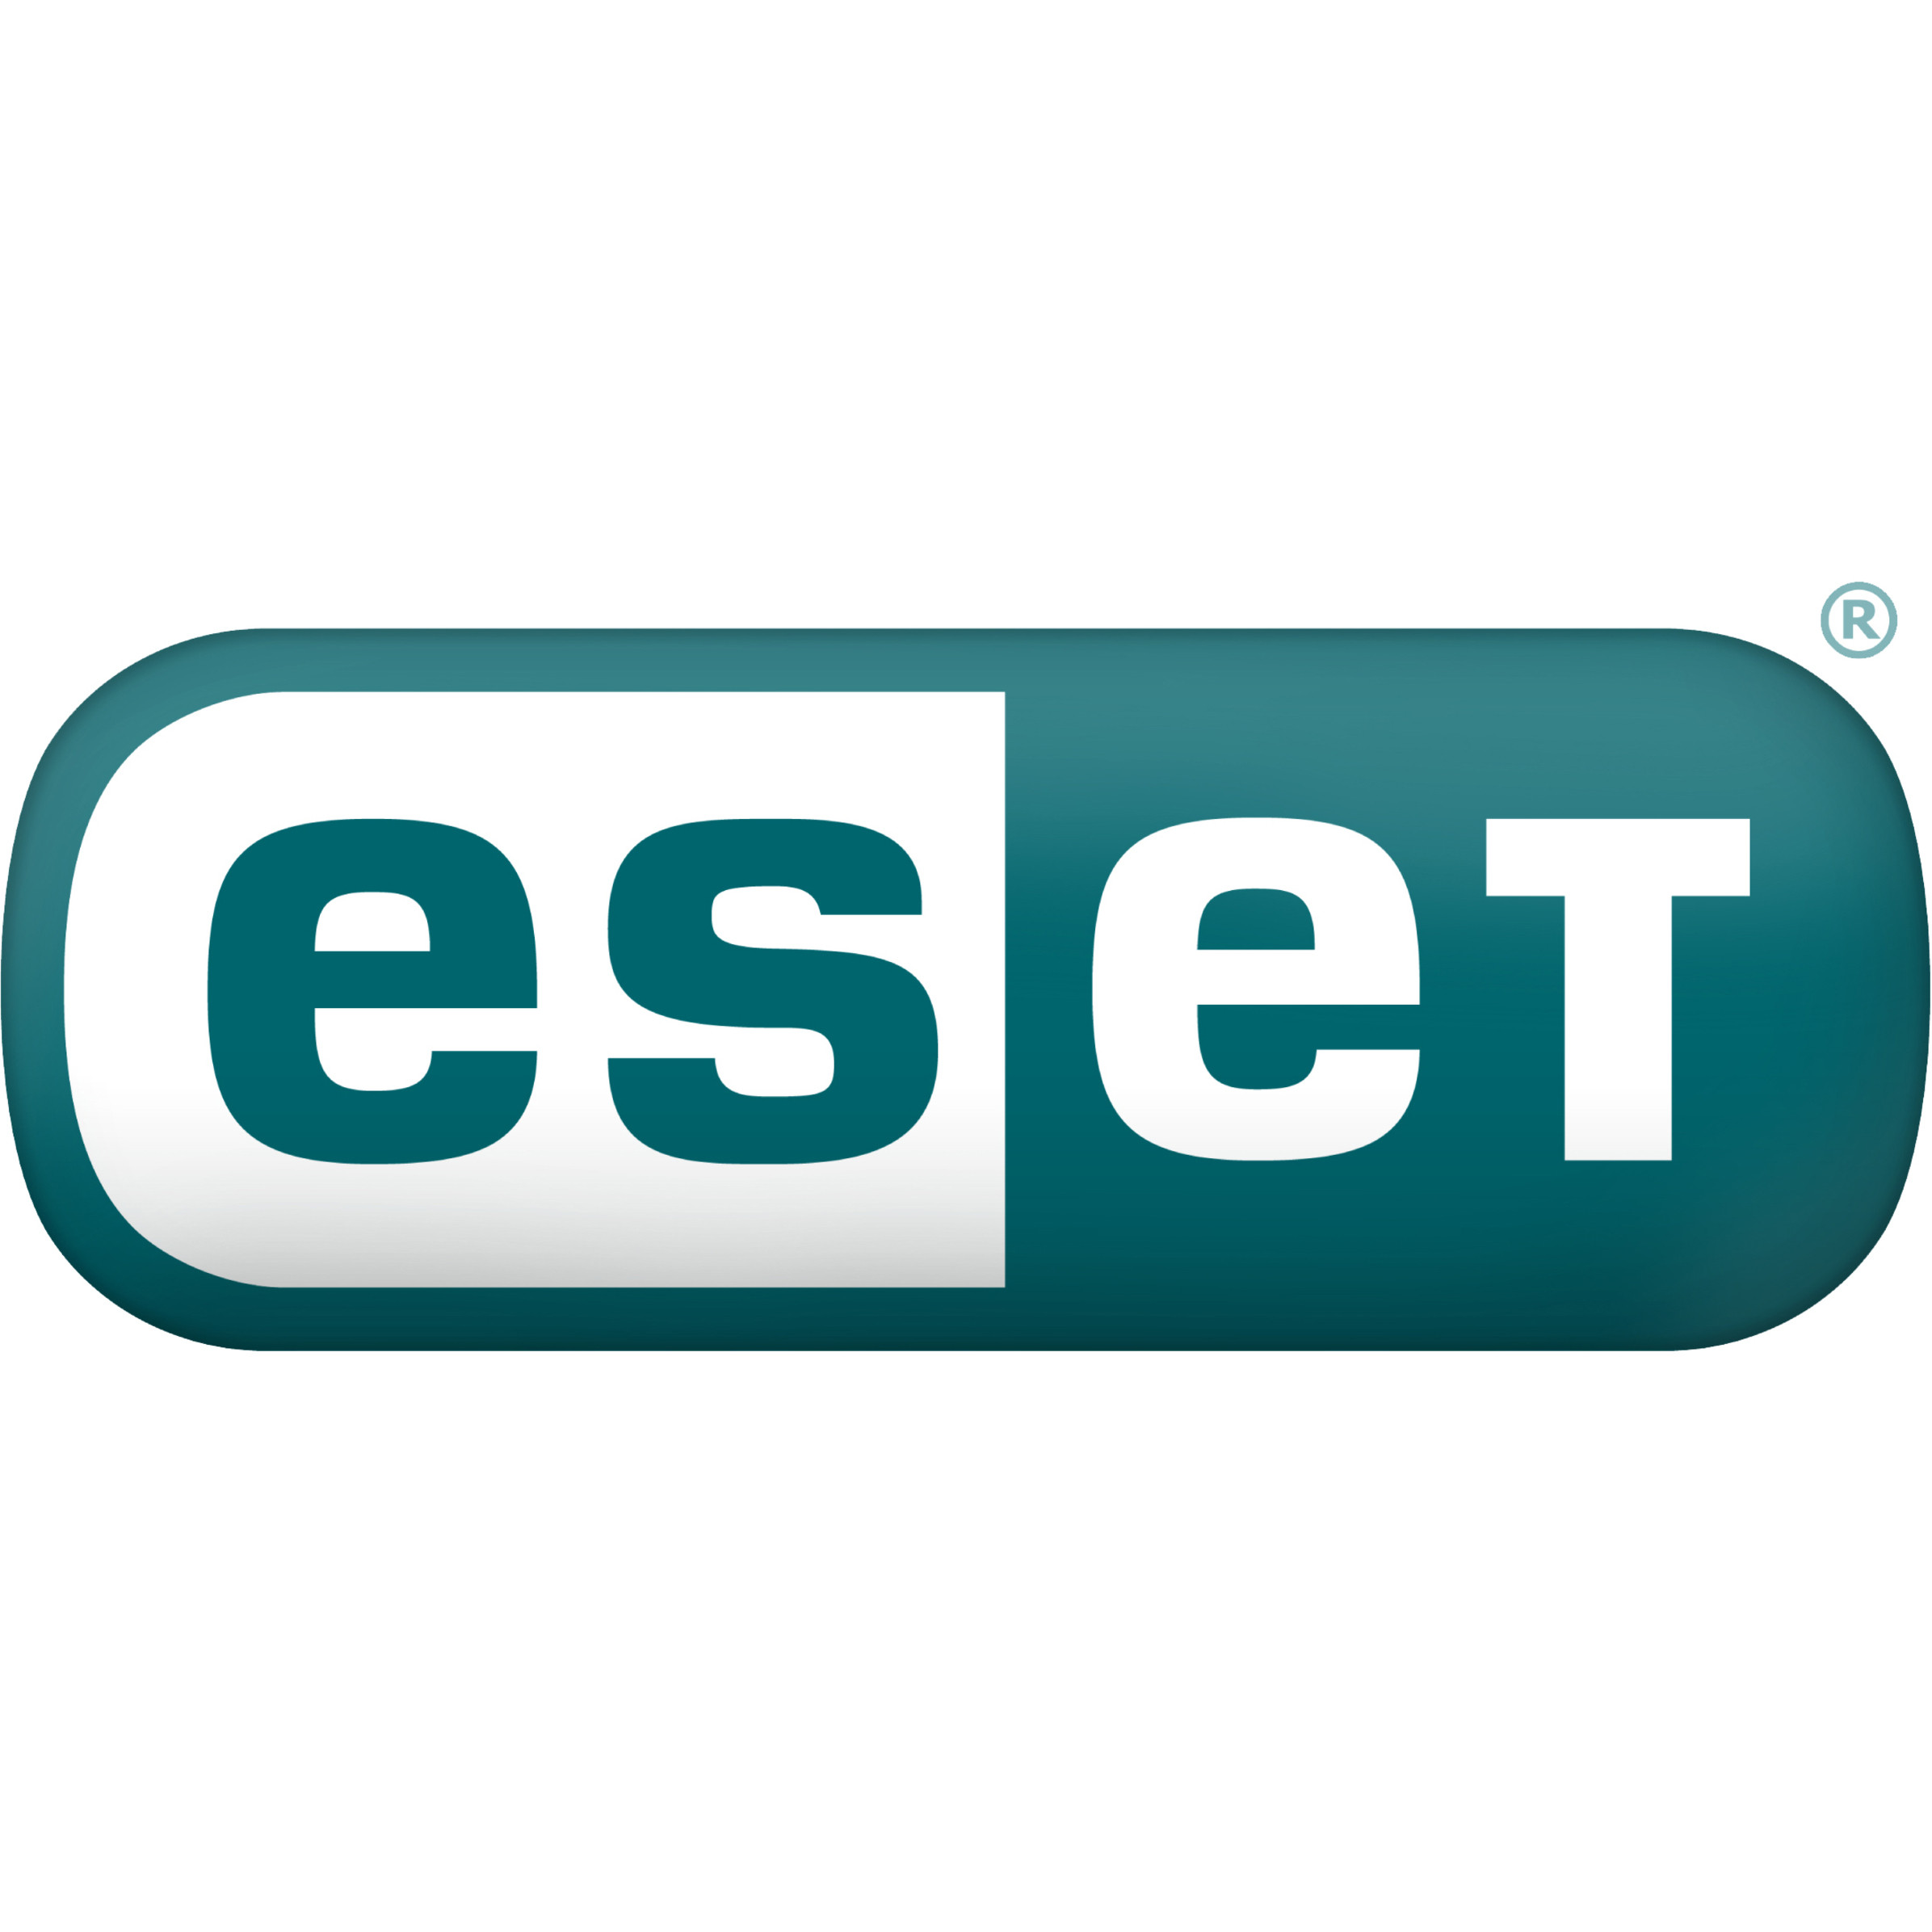 ESET Home Office Security PackSubscription License5 UserPC, Mac, Handheld ESOP-N1-A5